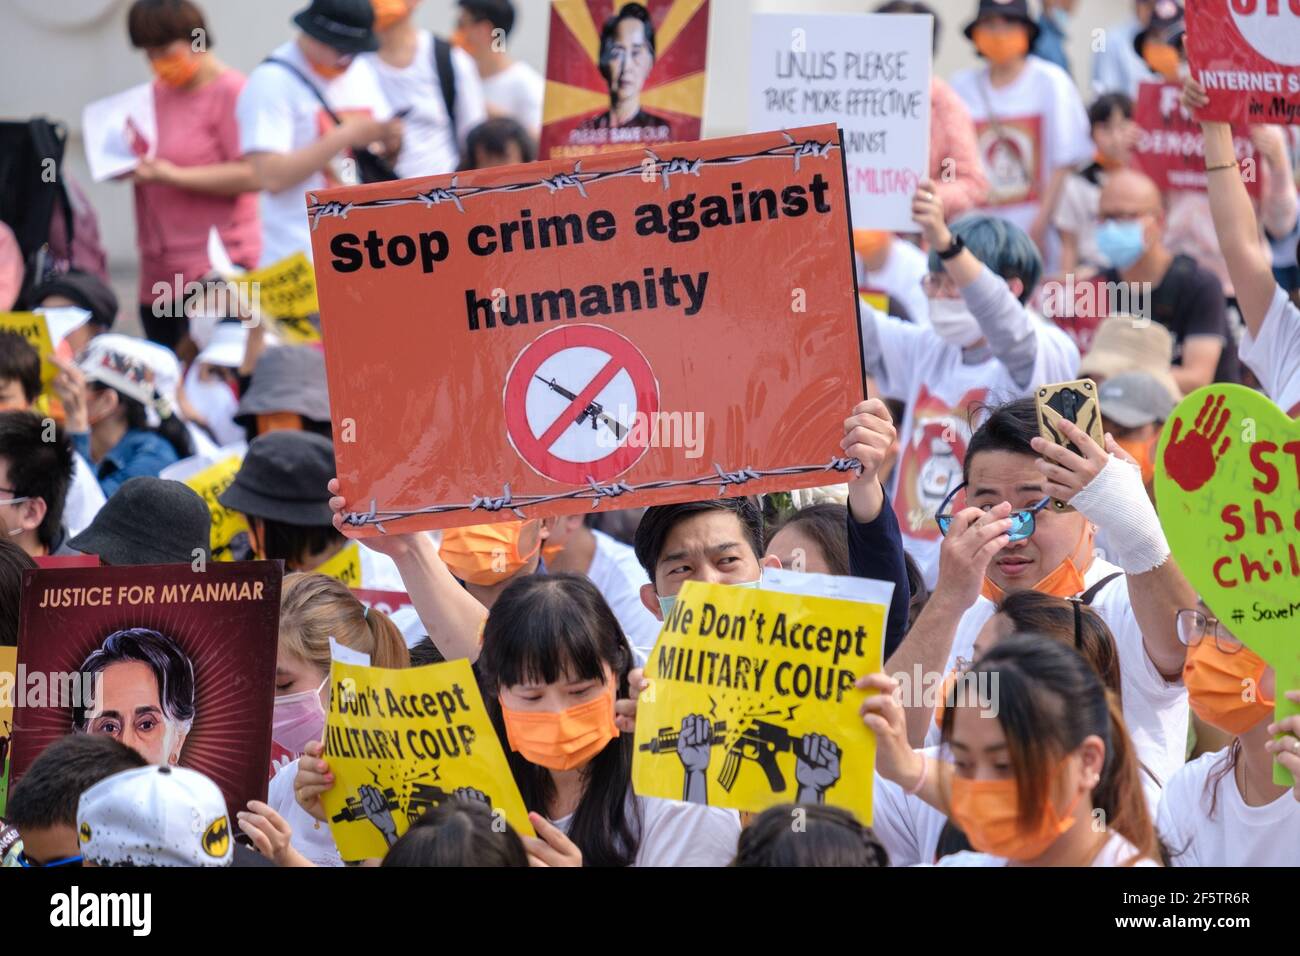 Les manifestants tiennent des pancartes pendant la manifestation.les Birmans qui vivent à Taiwan ainsi que les communautés locales se sont réunis sur la place de la liberté pour appeler à la fin du coup d'État militaire au Myanmar. La police et les militaires du Myanmar (tatmadow) ont attaqué les manifestants avec des balles en caoutchouc, des munitions réelles, des gaz lacrymogènes et des bombes lacrymogènes en réponse aux manifestants anti-coup d'État militaire qui ont tué samedi au Myanmar plus de 100 personnes et en ont blessé beaucoup d'autres. Au moins 300 personnes ont été tuées au Myanmar depuis le coup d'État du 1er février, a déclaré un responsable des droits de l'homme de l'ONU. Conseiller militaire de l'État détenu du Myanmar Banque D'Images